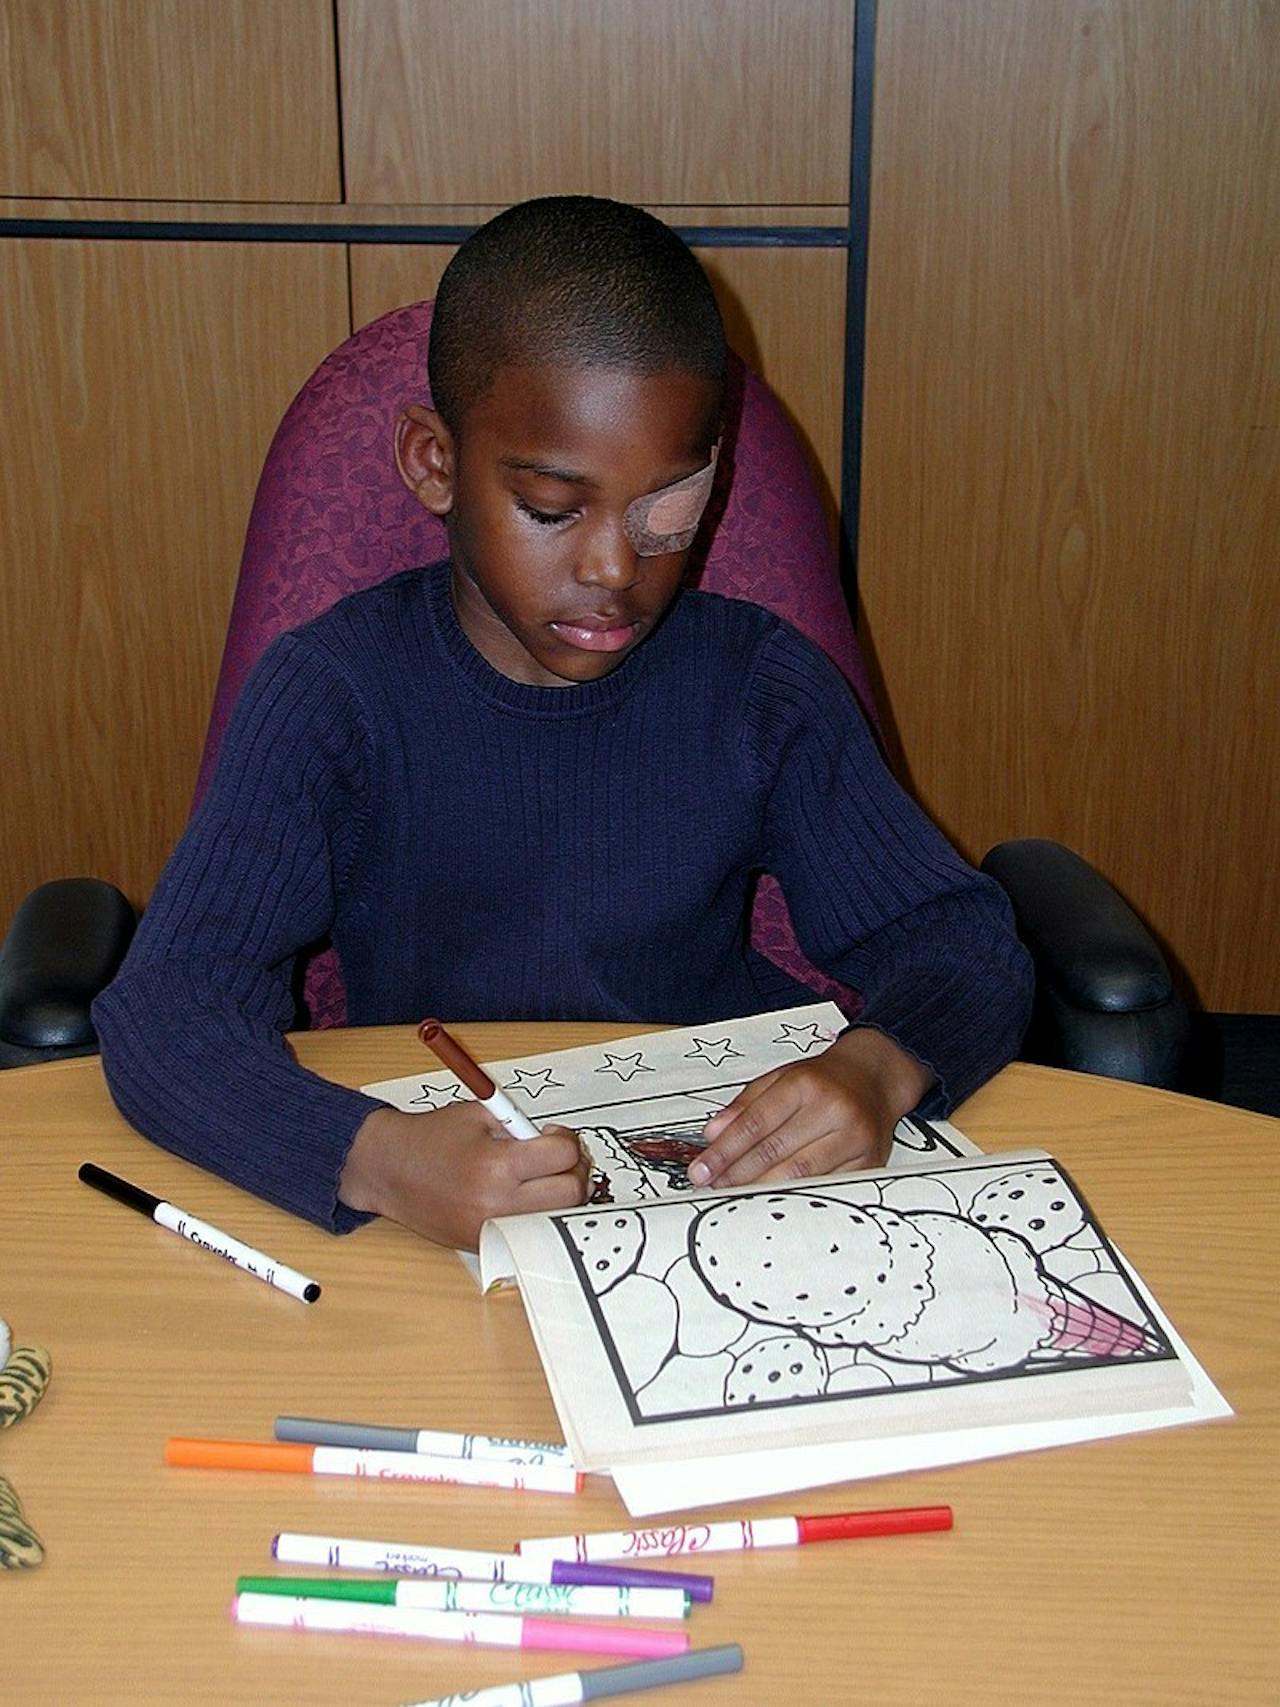 Een kind met één afgeplakt oog kleurt in een kleurboek.